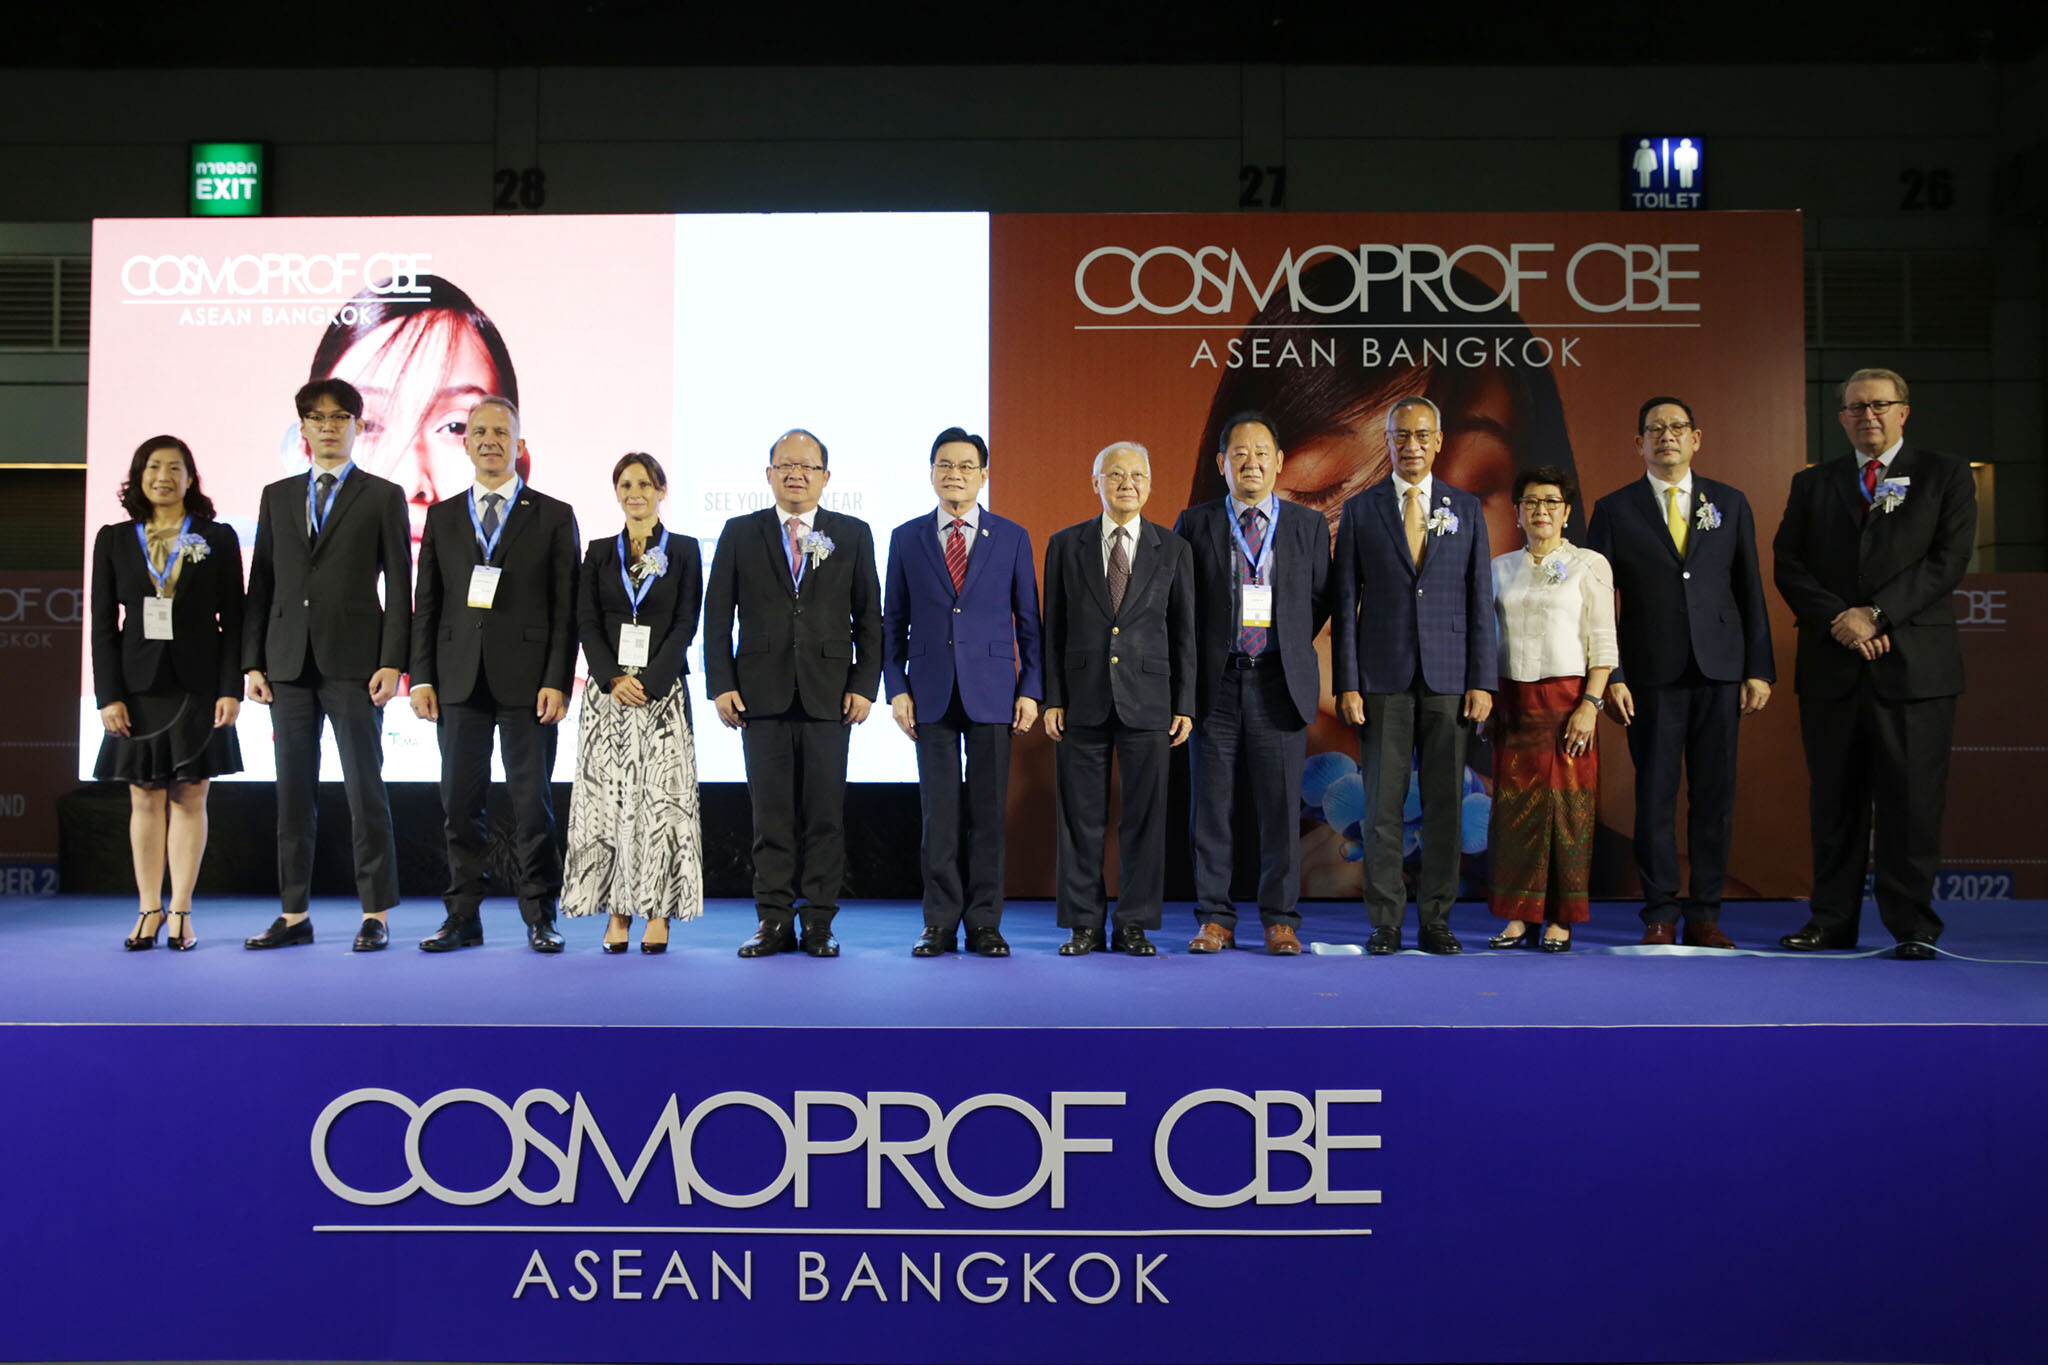 เริ่มแล้ว งานแสดงสินค้าเพื่อธุรกิจความงามระดับโลก "คอสโมพรอฟ ซีบีอี อาเซียน" ครั้งแรกในประเทศไทย